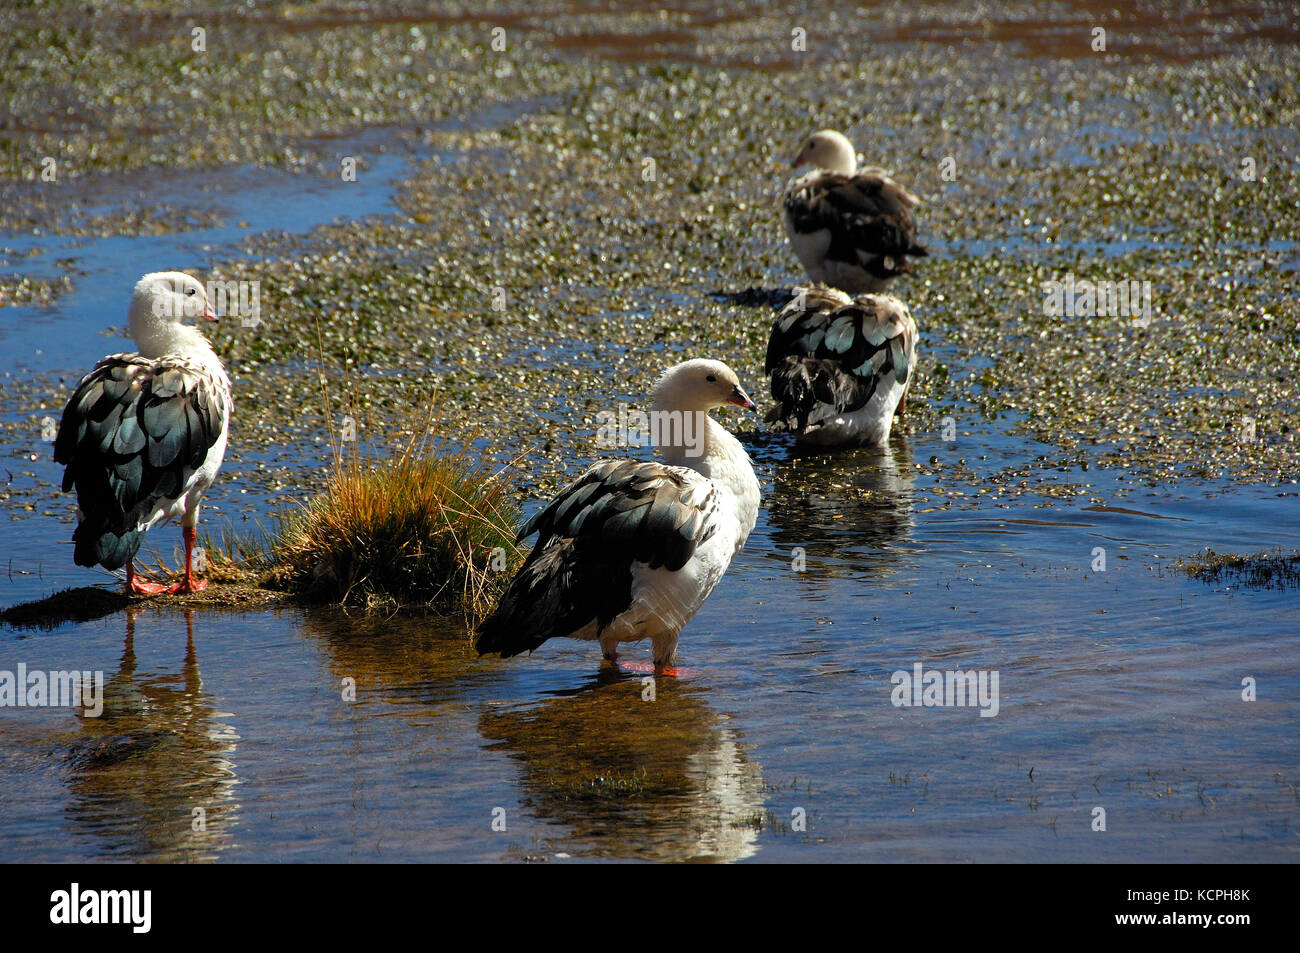 Chile desierto de Atacama, el río putana formularios en la meseta una amplia zona húmeda que alberga un gran número de especies de aves nidificantes. ganso andino (Chloephaga melanoptera). Foto de stock